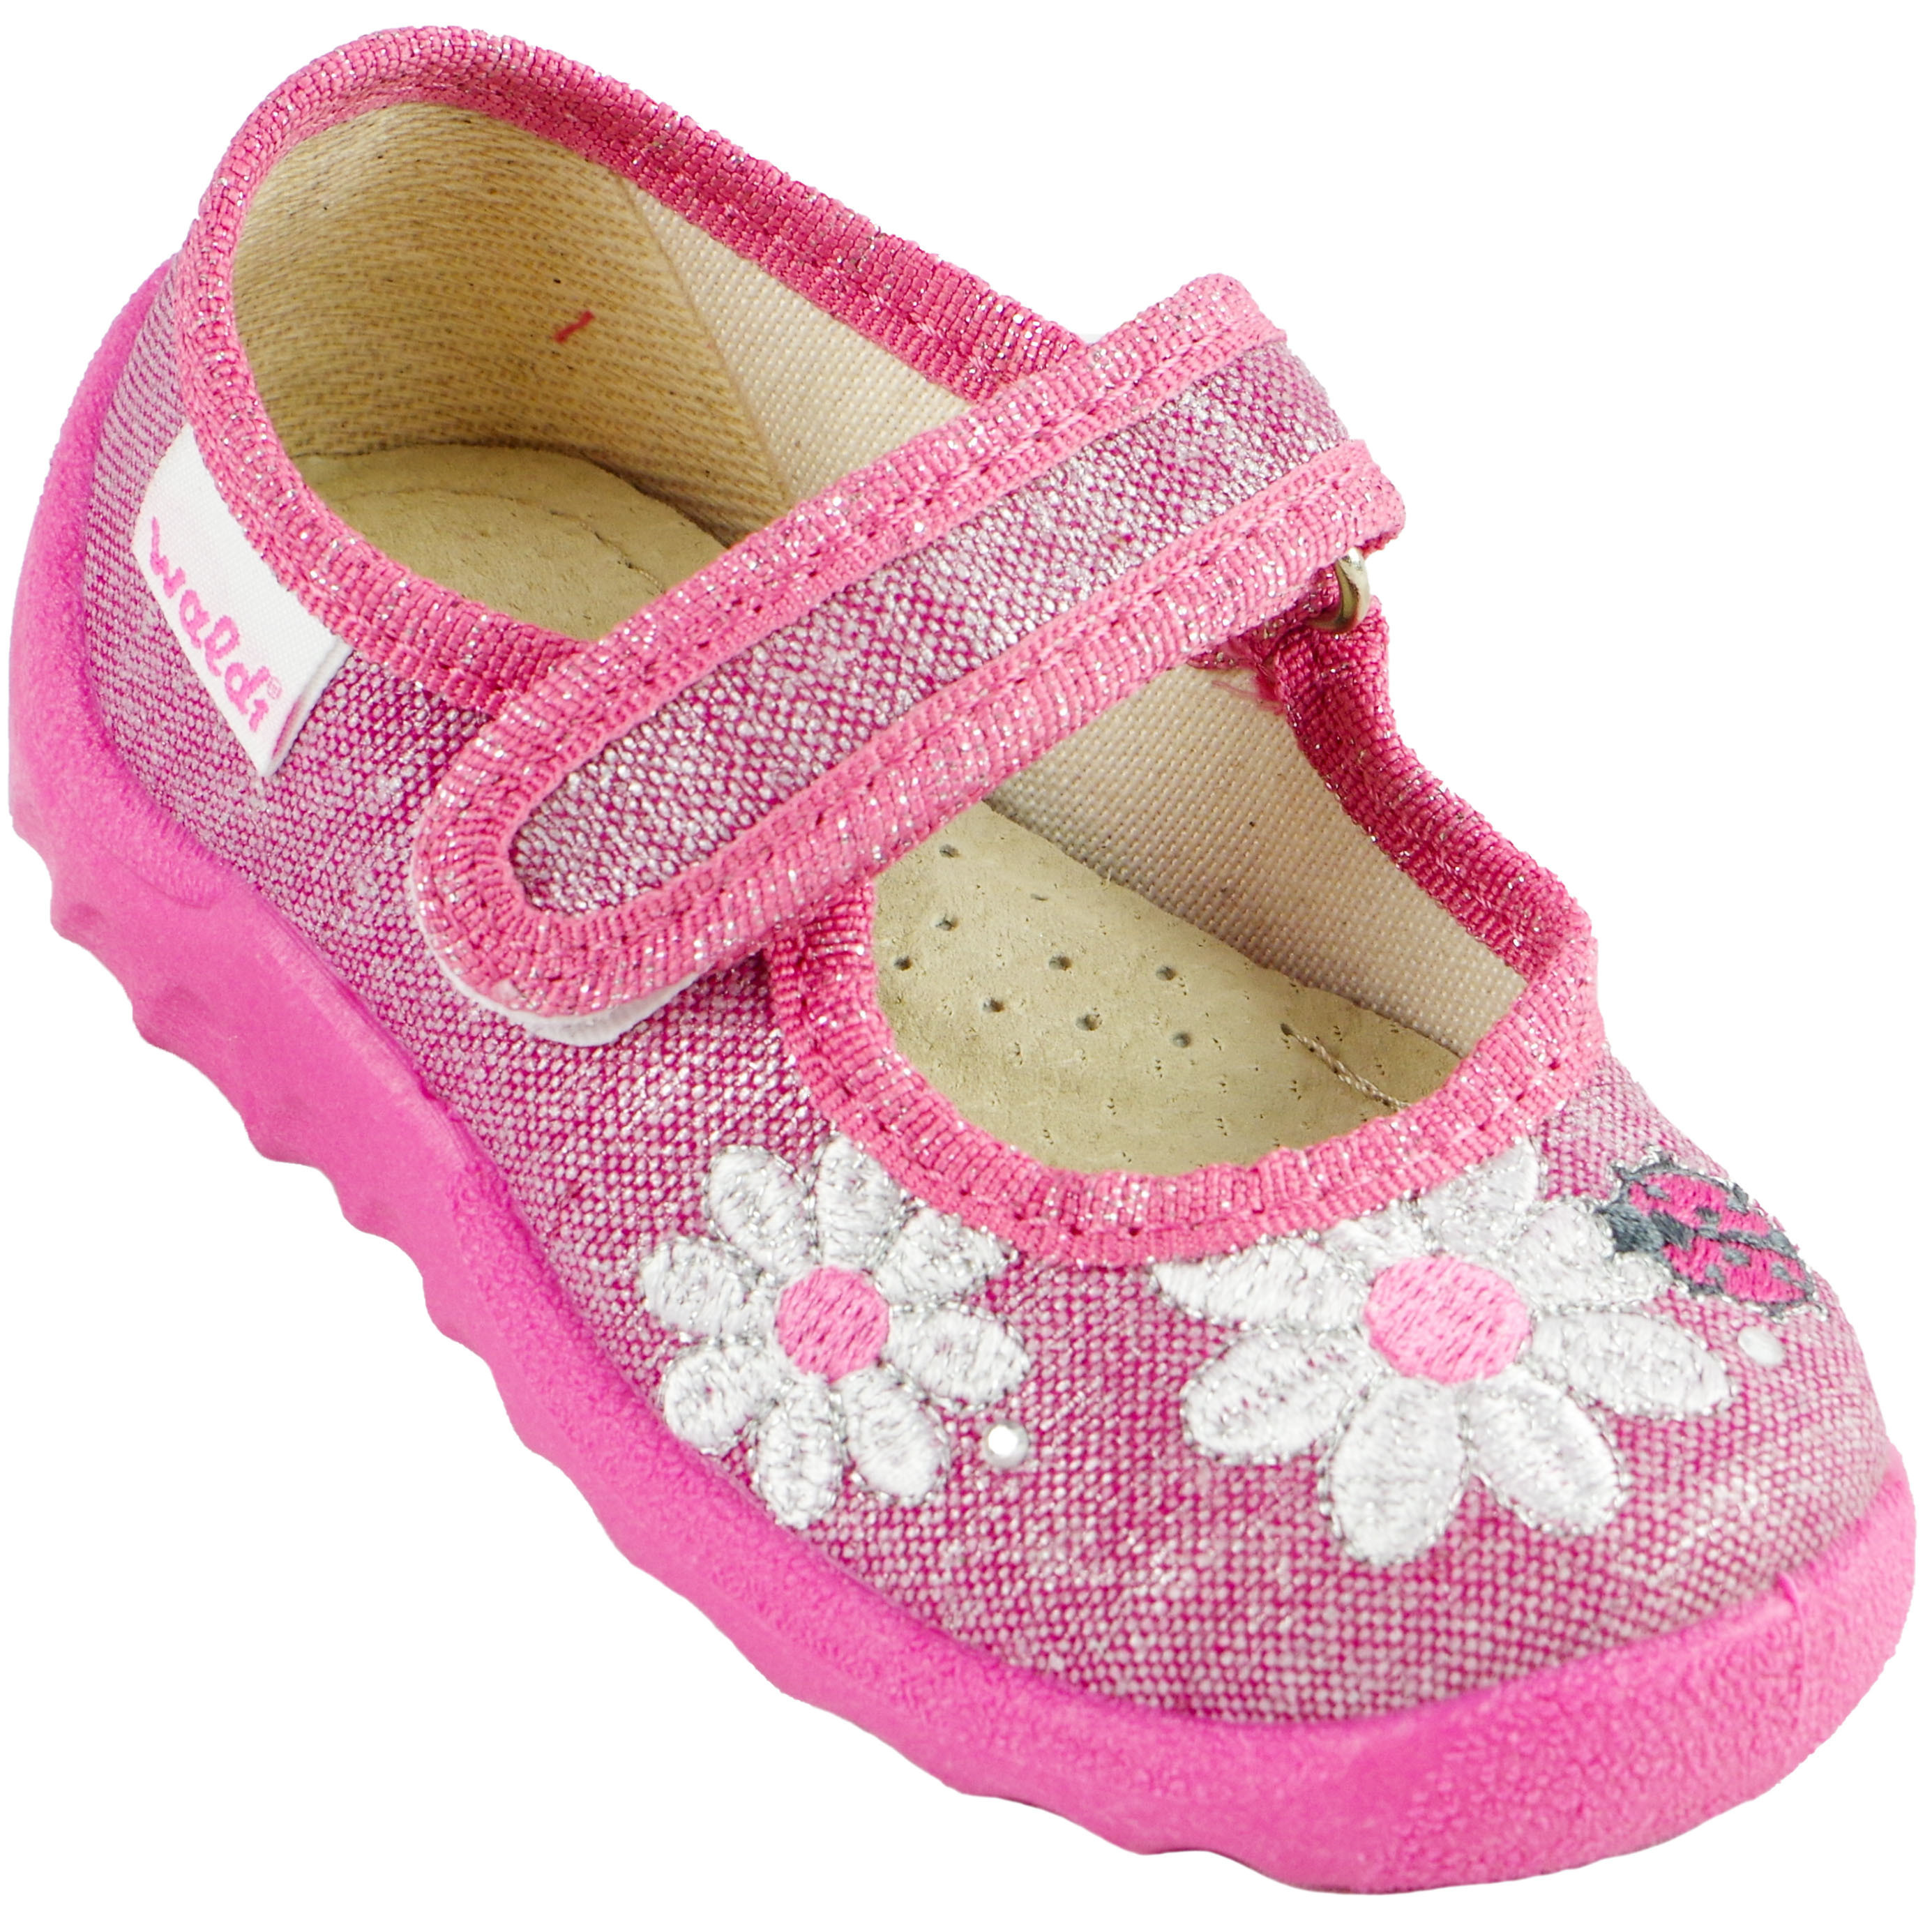 Текстильная обувь для девочек Waldi Тапочки детские (1297) цвет Розовый 21-27 размеры – Sole Kids